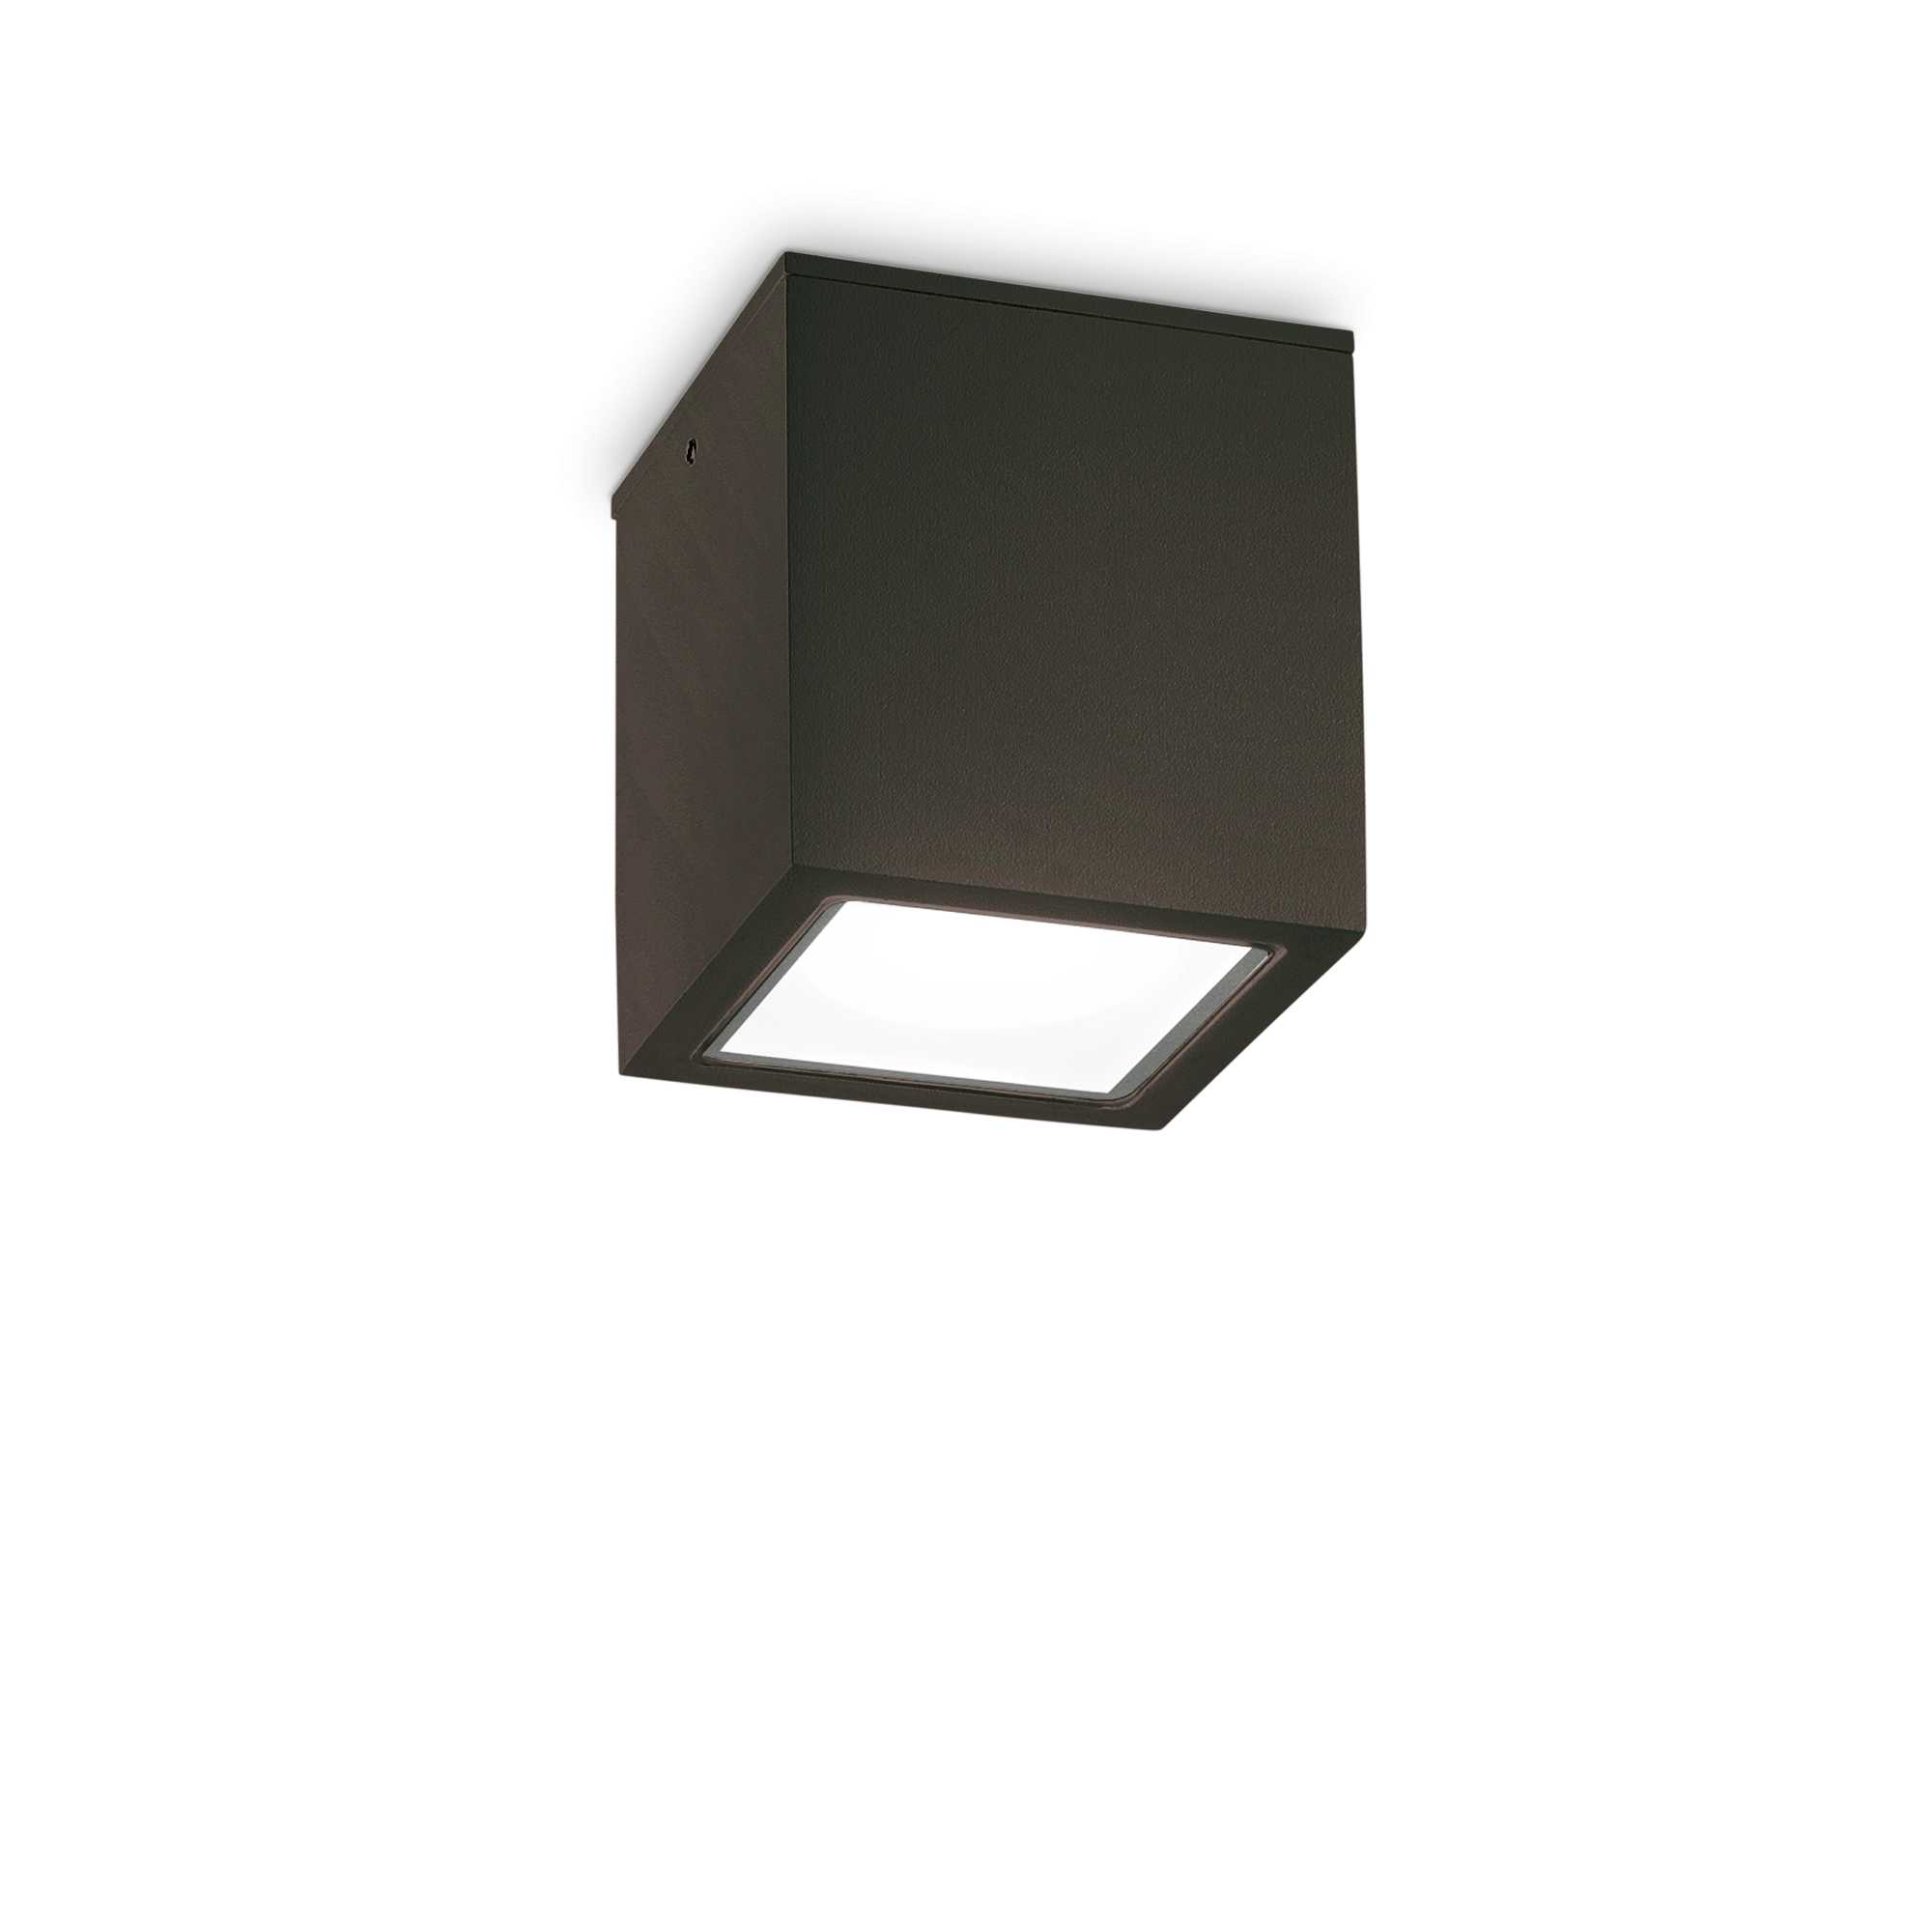 AD hotelska oprema Vanjska stropna lampa Techo pl1 velika- Crne boje slika proizvoda